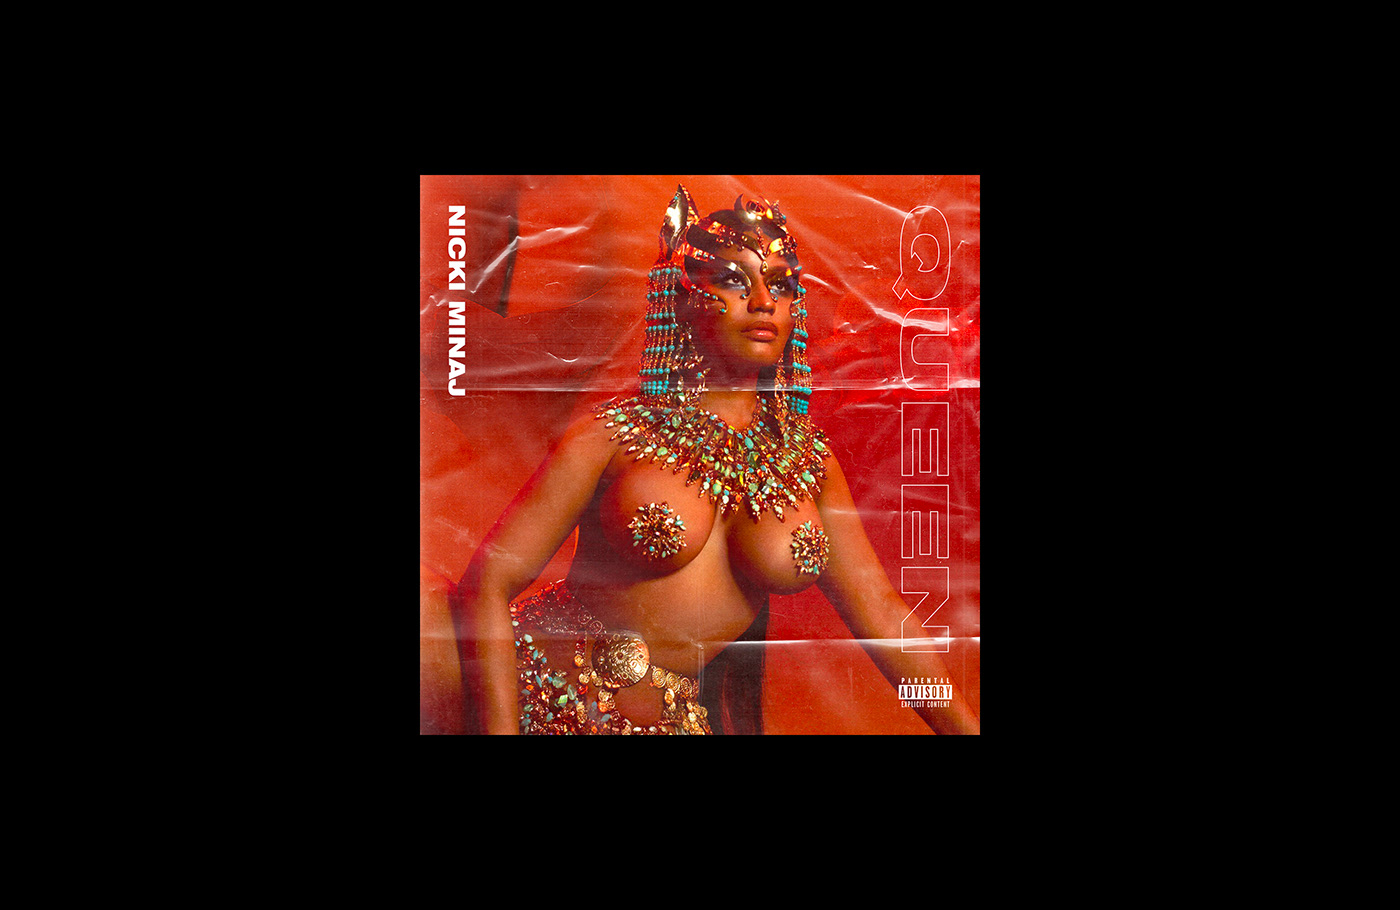 Album artwork cover art music branding  Drake asap rocky j cole art direction 